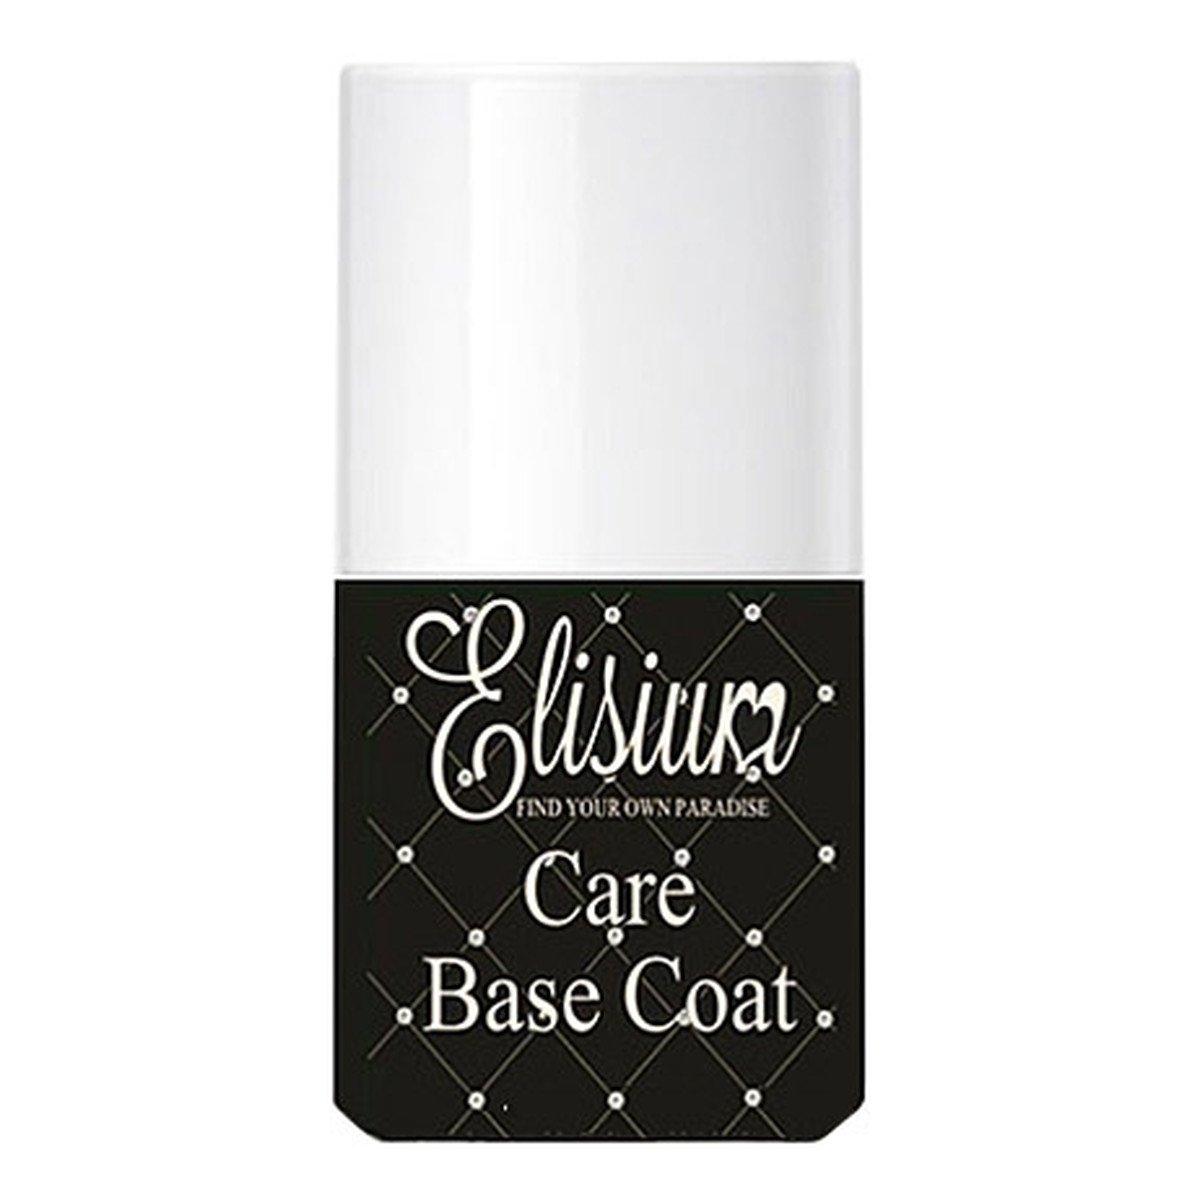 Elisium Care Base Coat, utwardzacz do lakierów światloutwardzalnych 9g